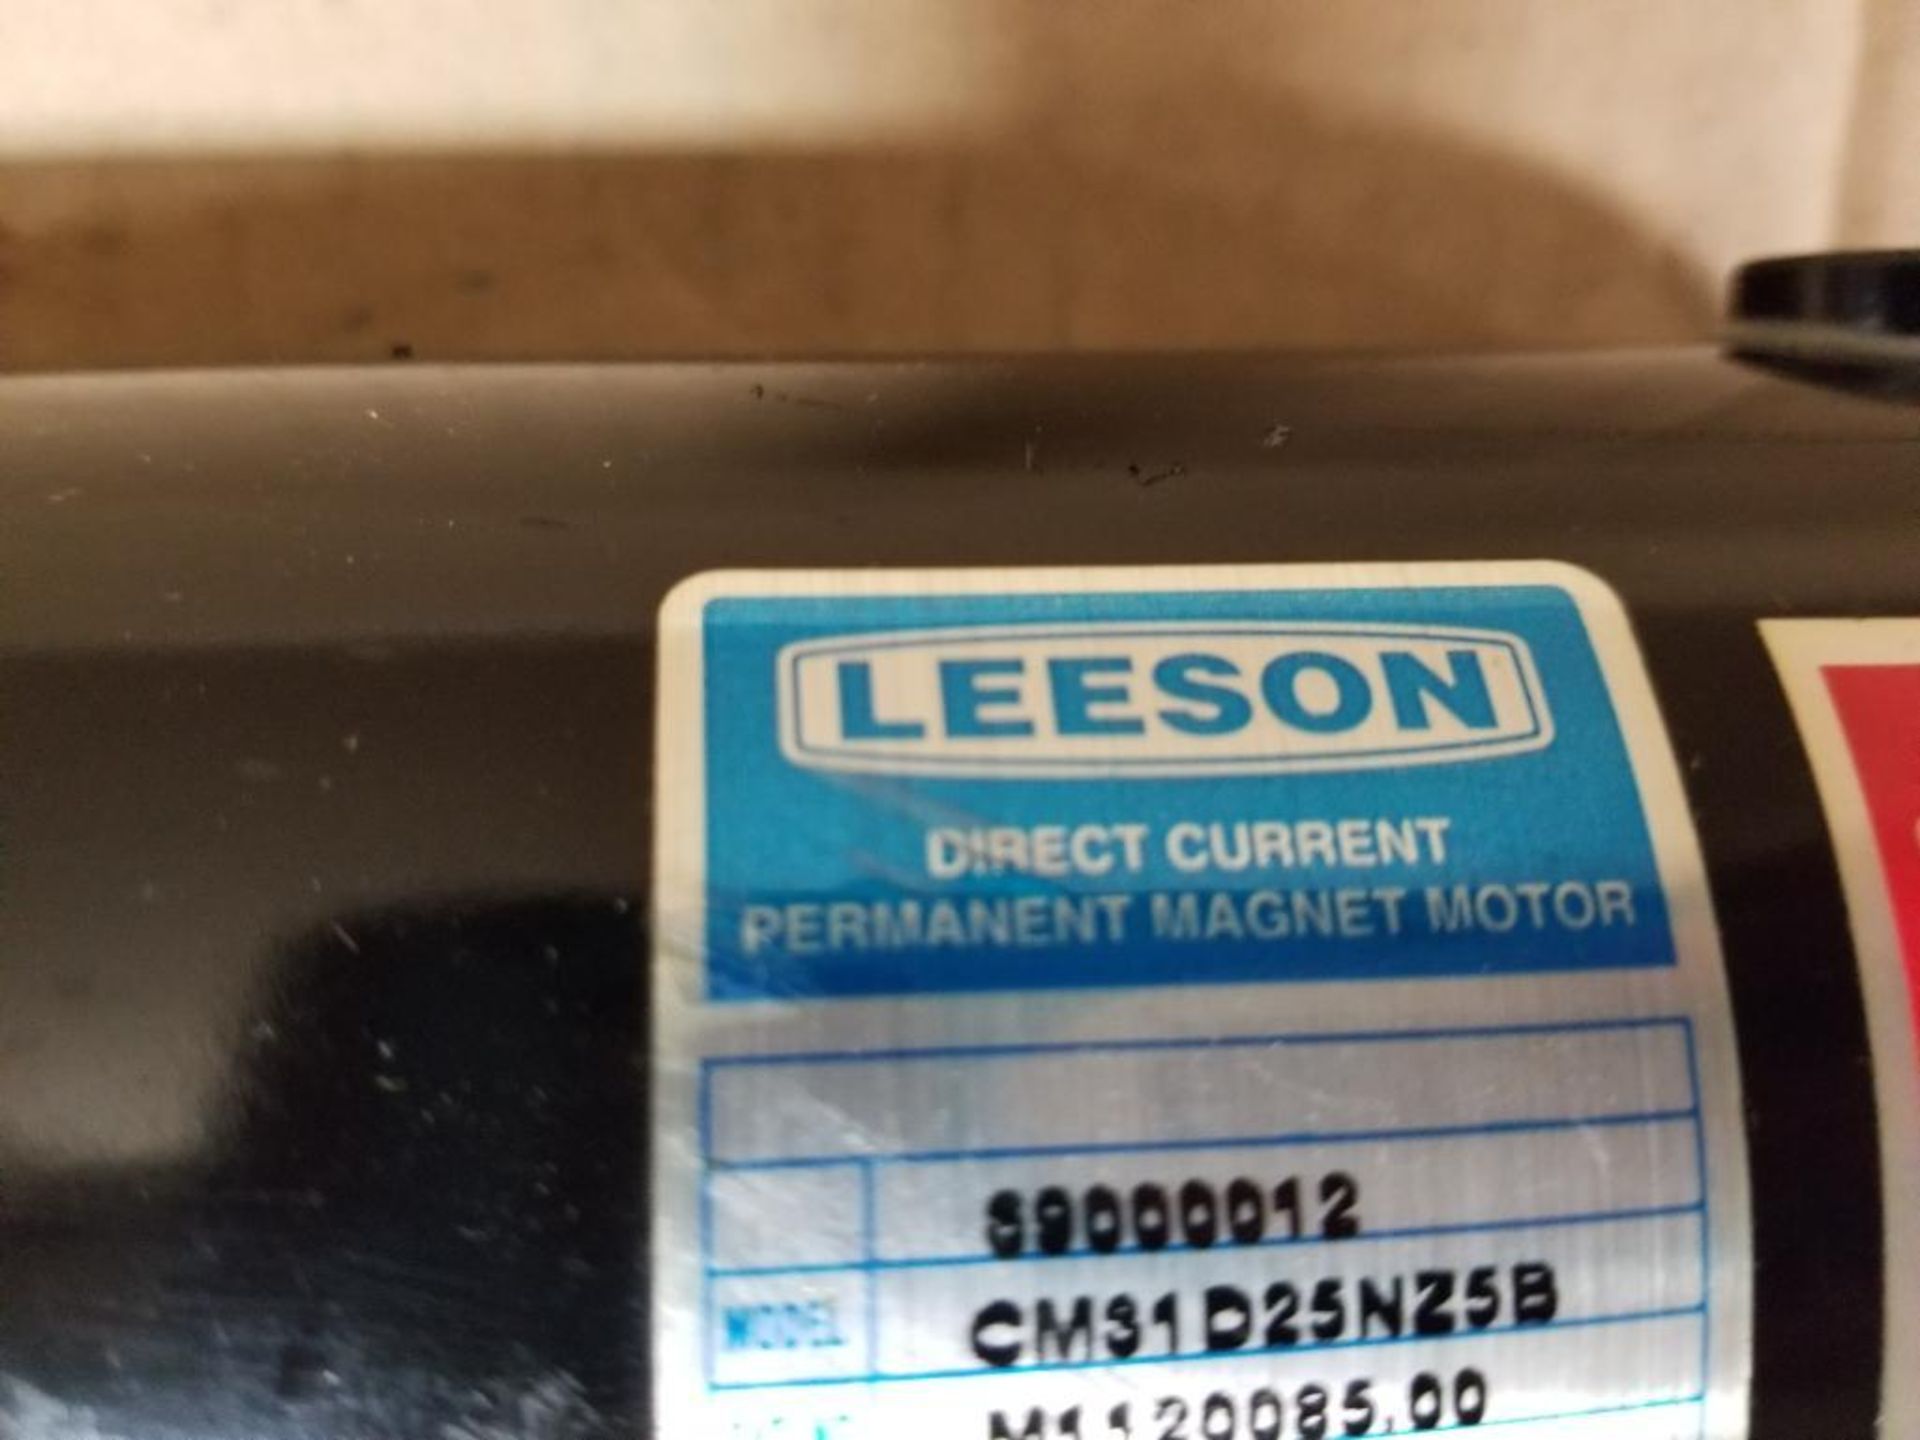 1/4HP Leeson CM31D25NZ5B direct current perm. magnet motor. 90V, 2500RPM, 31-Frame. - Image 3 of 6